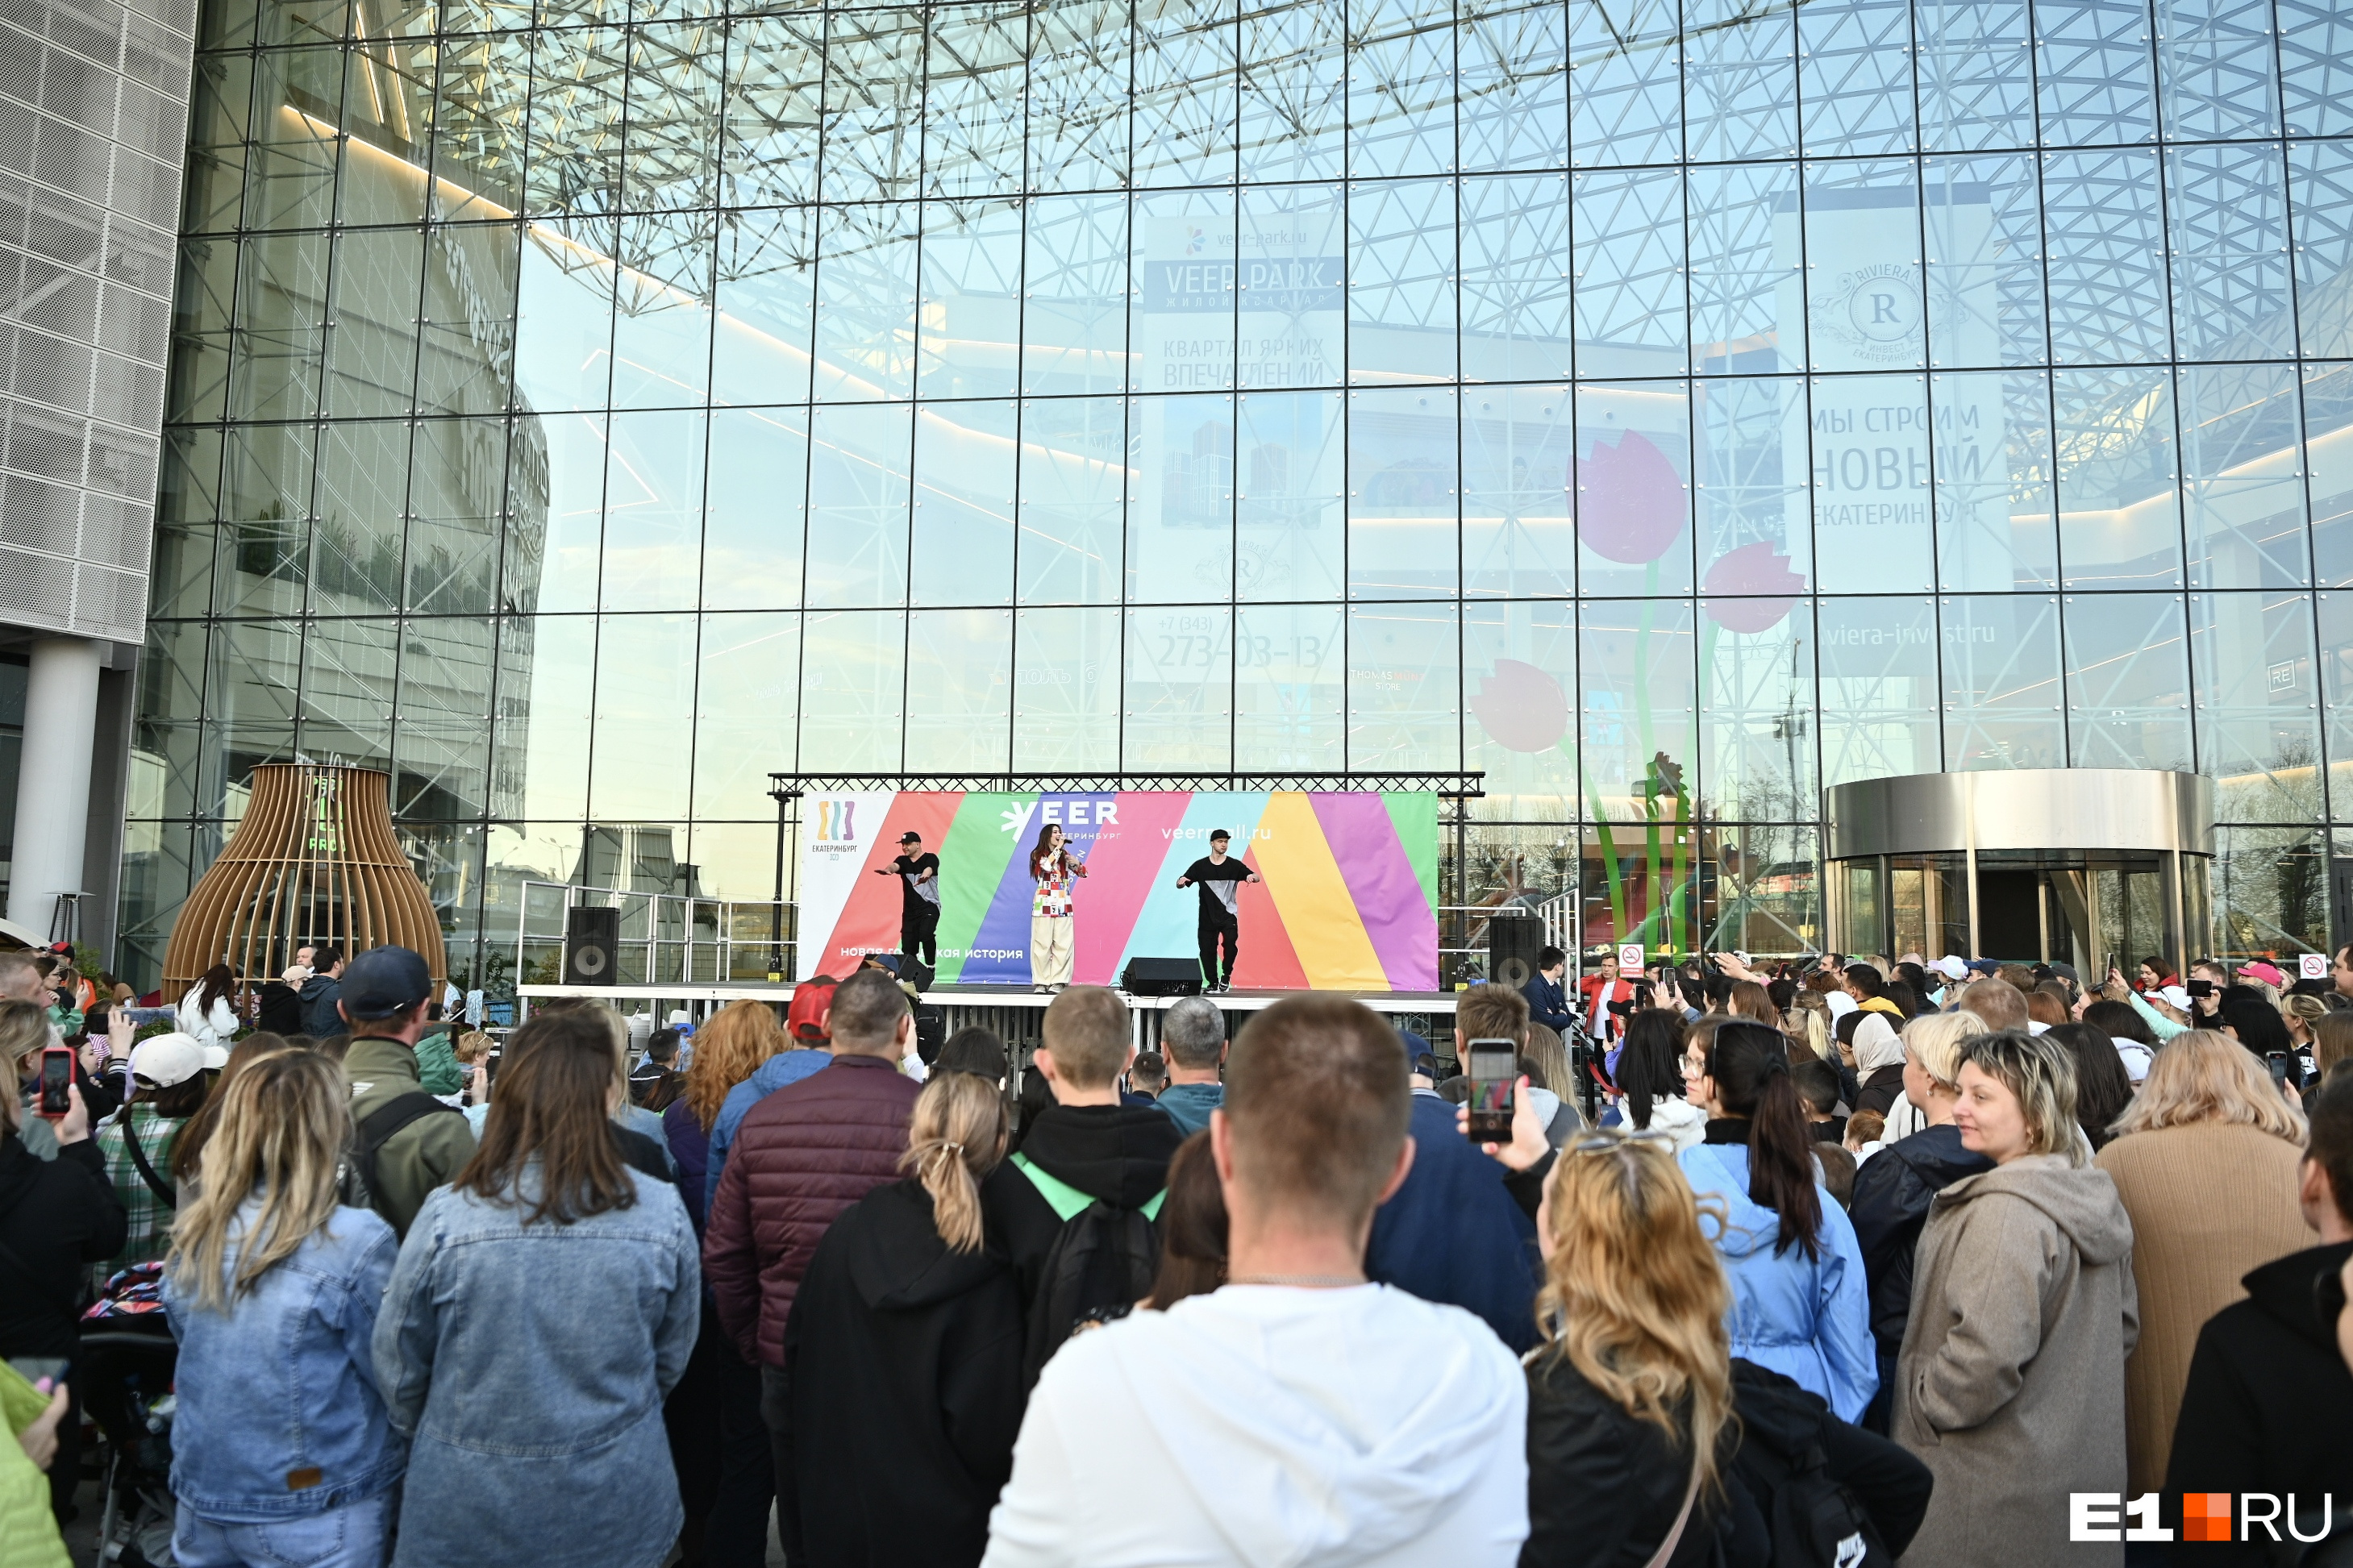 Легендарная группа из двухтысячных собрала толпу фанатов перед торговым центром в Екатеринбурге